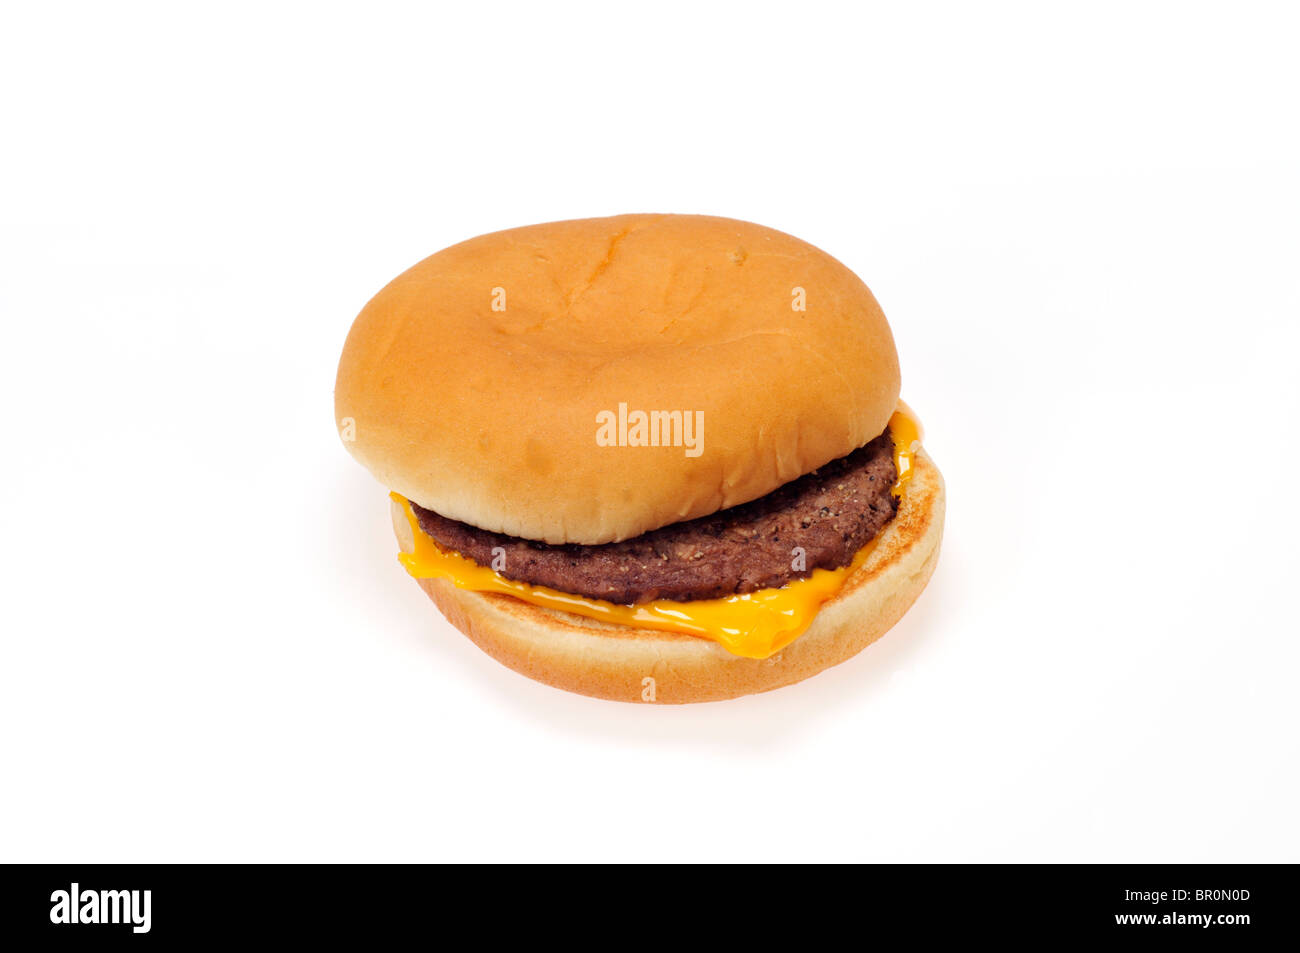 Einzigen Mcdonalds Cheeseburger in Brot Brötchen auf weißem Hintergrund, ausgeschnitten. Stockfoto